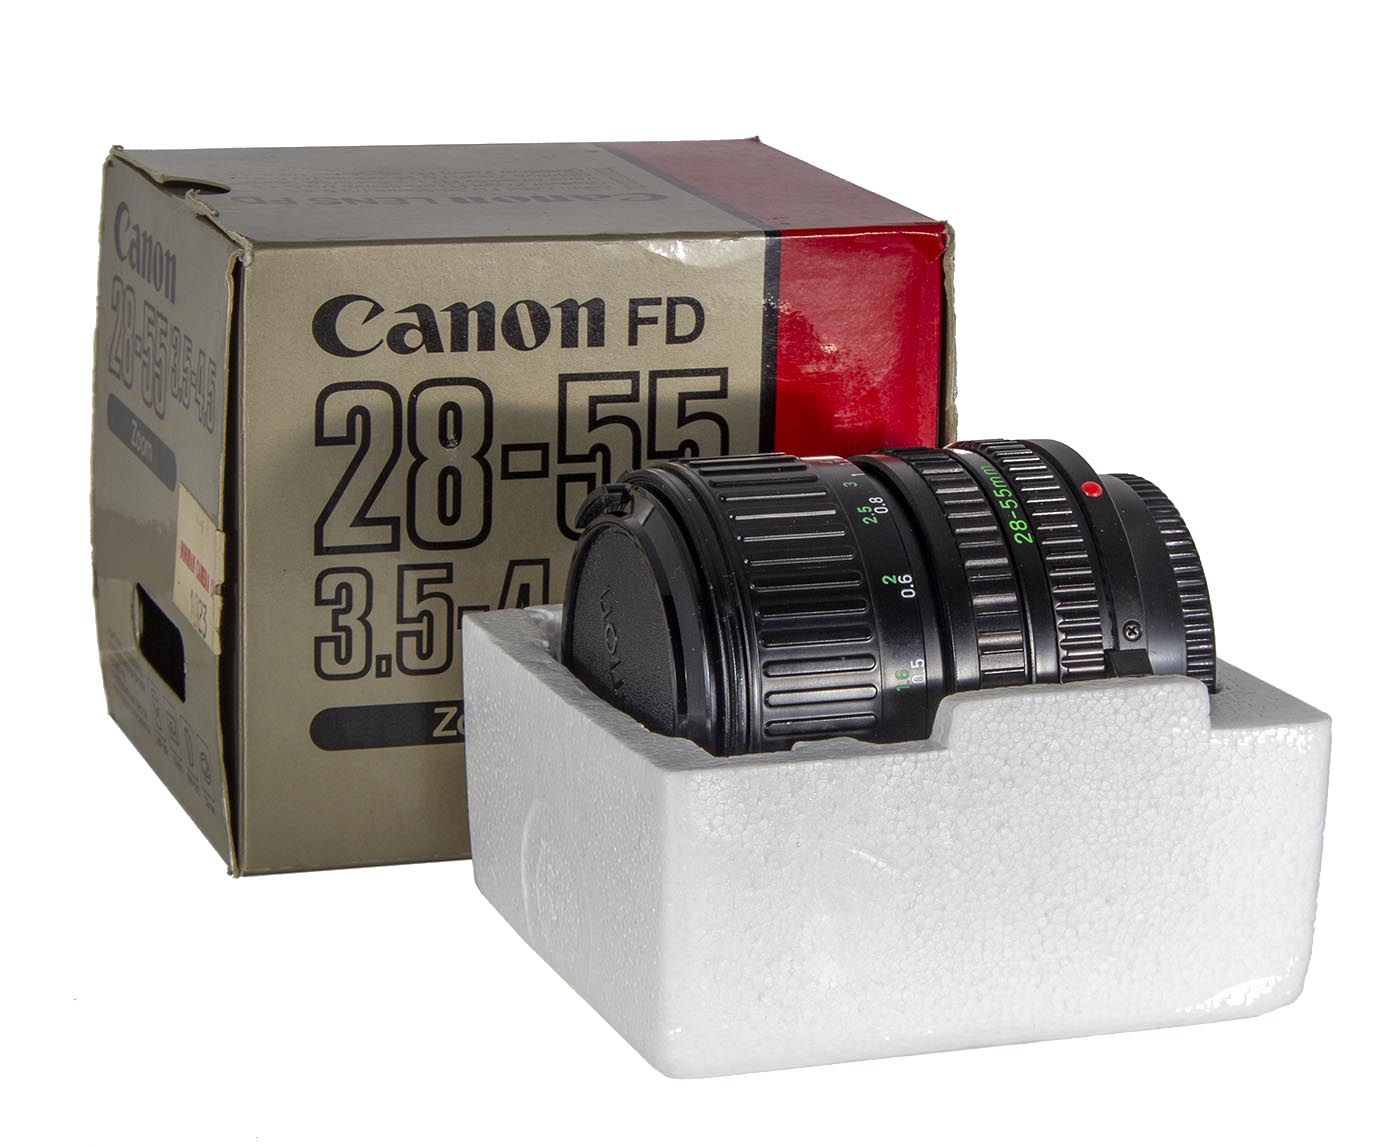 Canon FDn 28-55mm lens